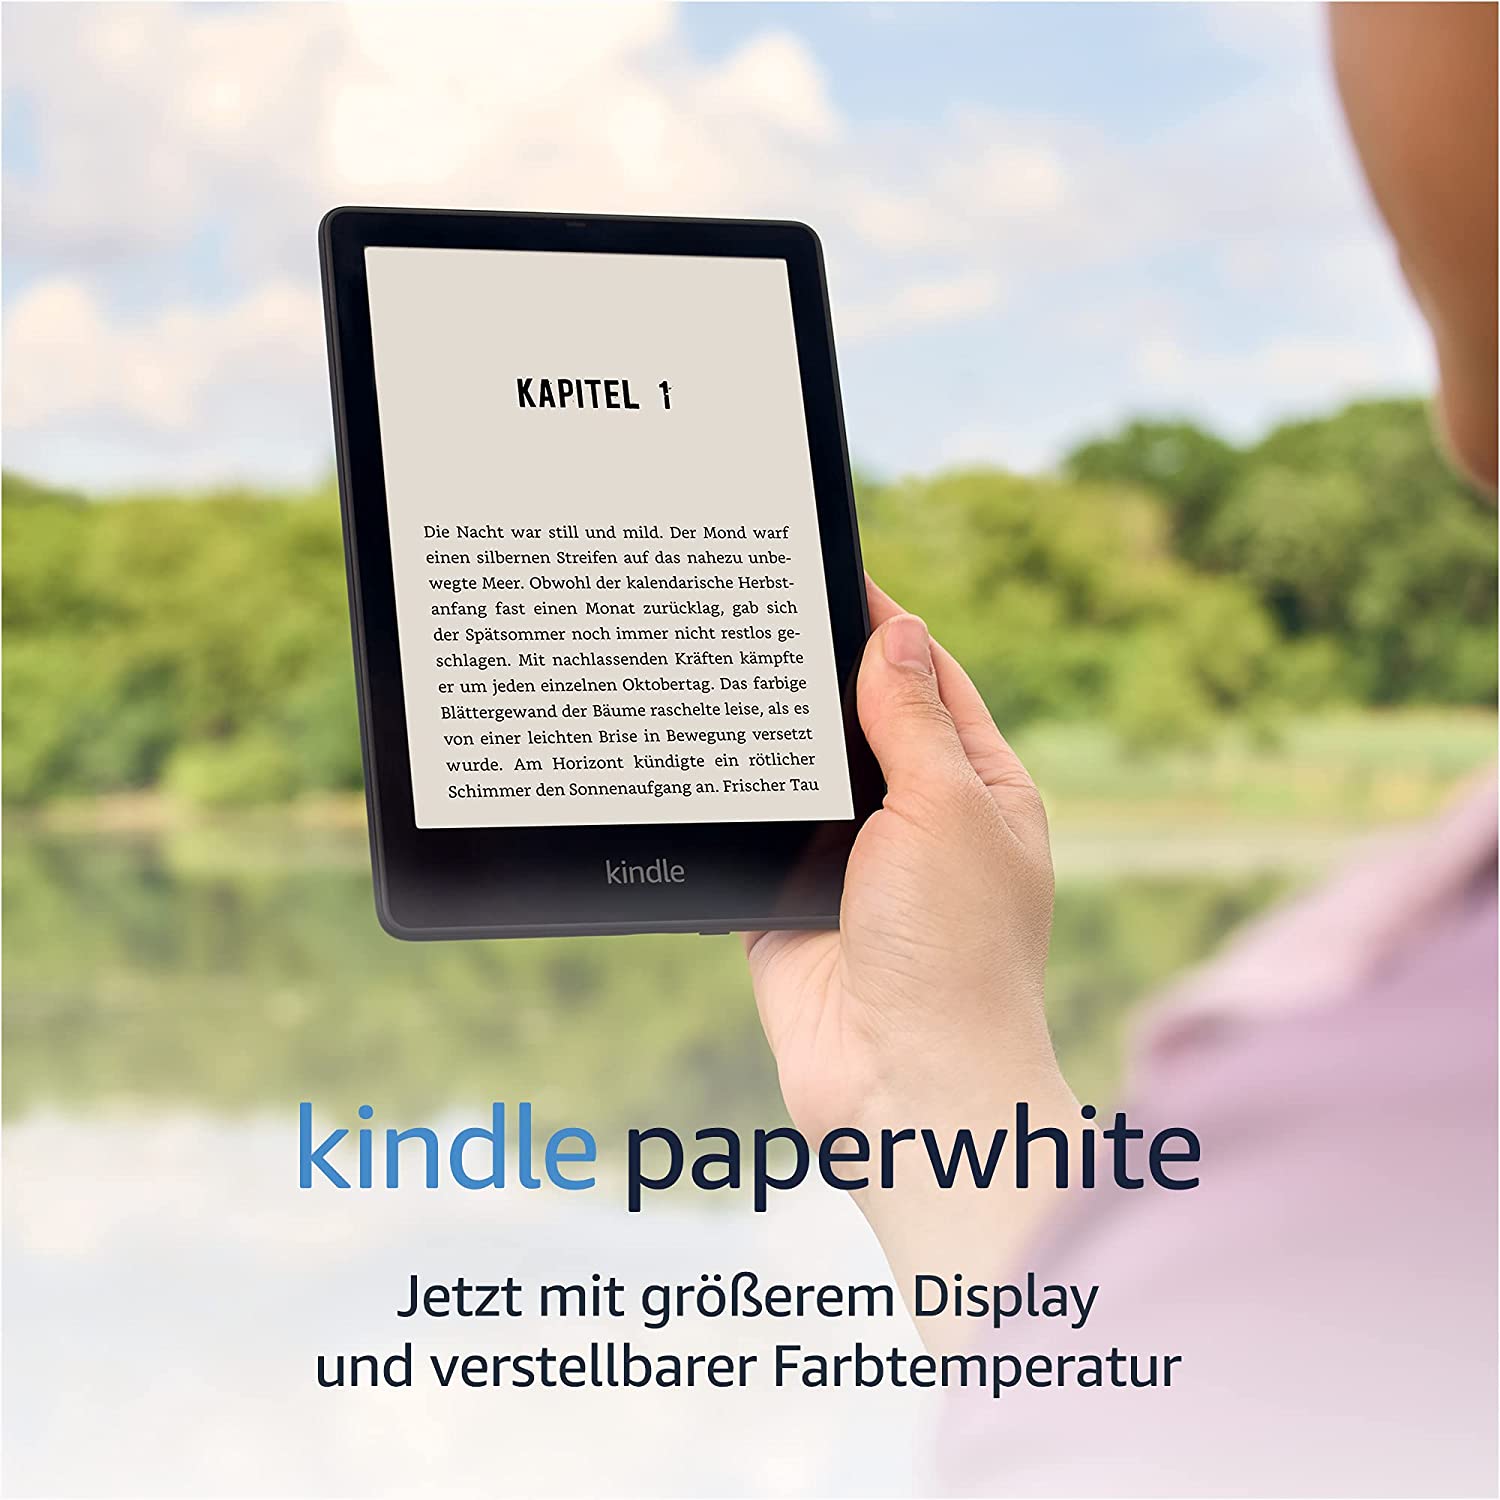 Das aktuellste Modell: Amazon Kindle paperwhite (Foto: siehe Bildnachweis unten)